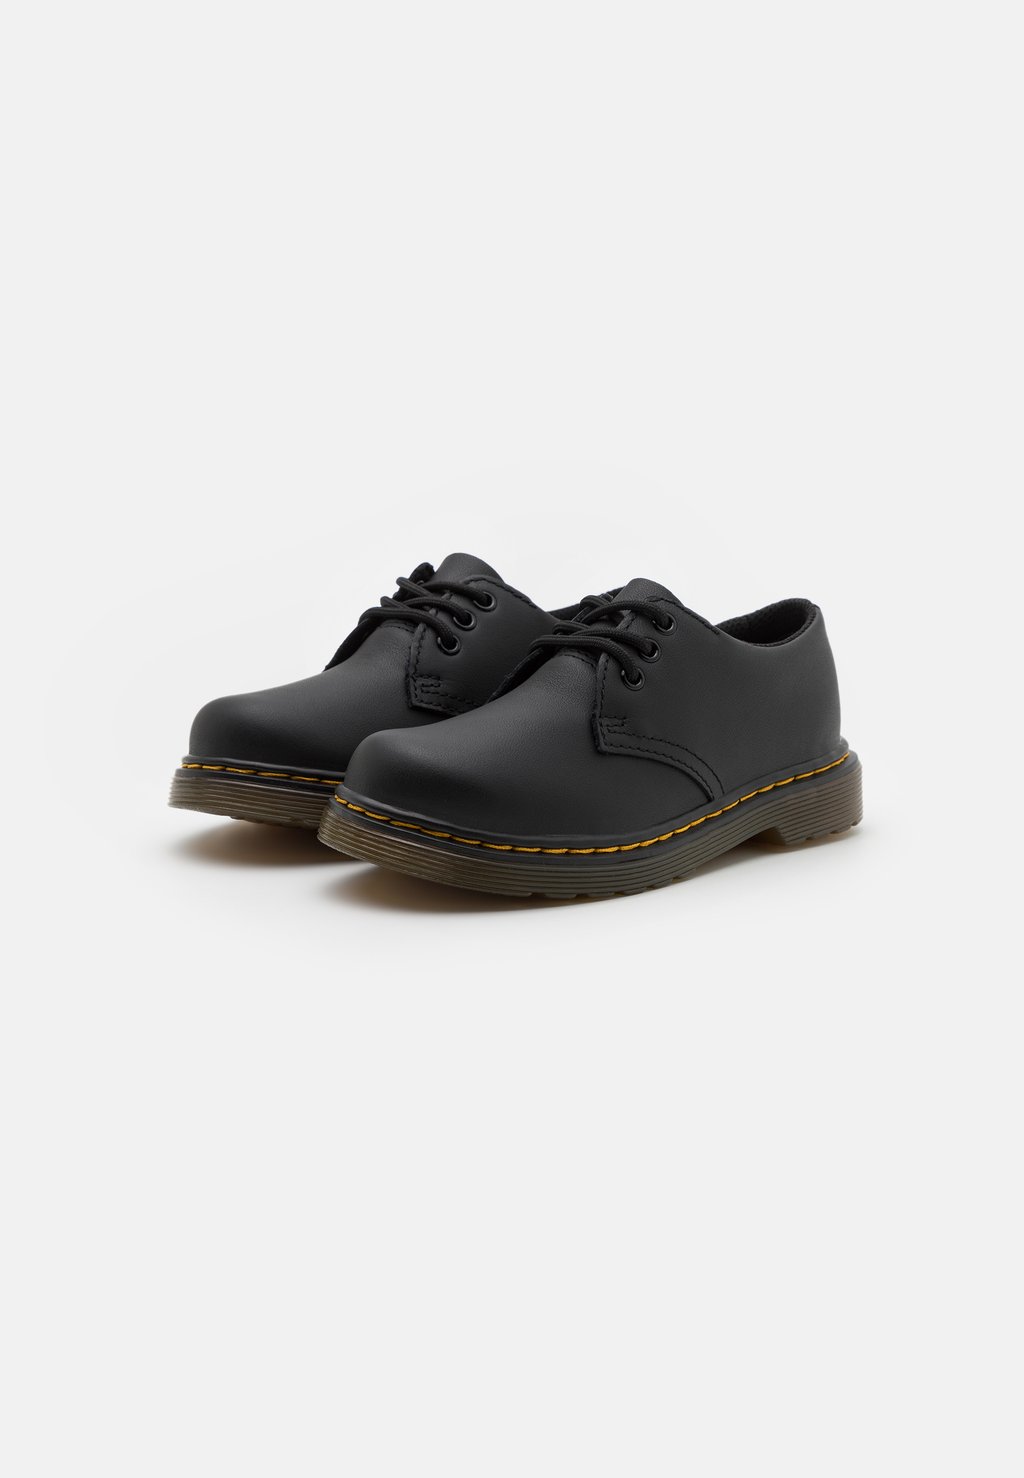 Спортивные туфли на шнуровке 1461 UNISEX Dr. Martens, цвет black softy цена и фото